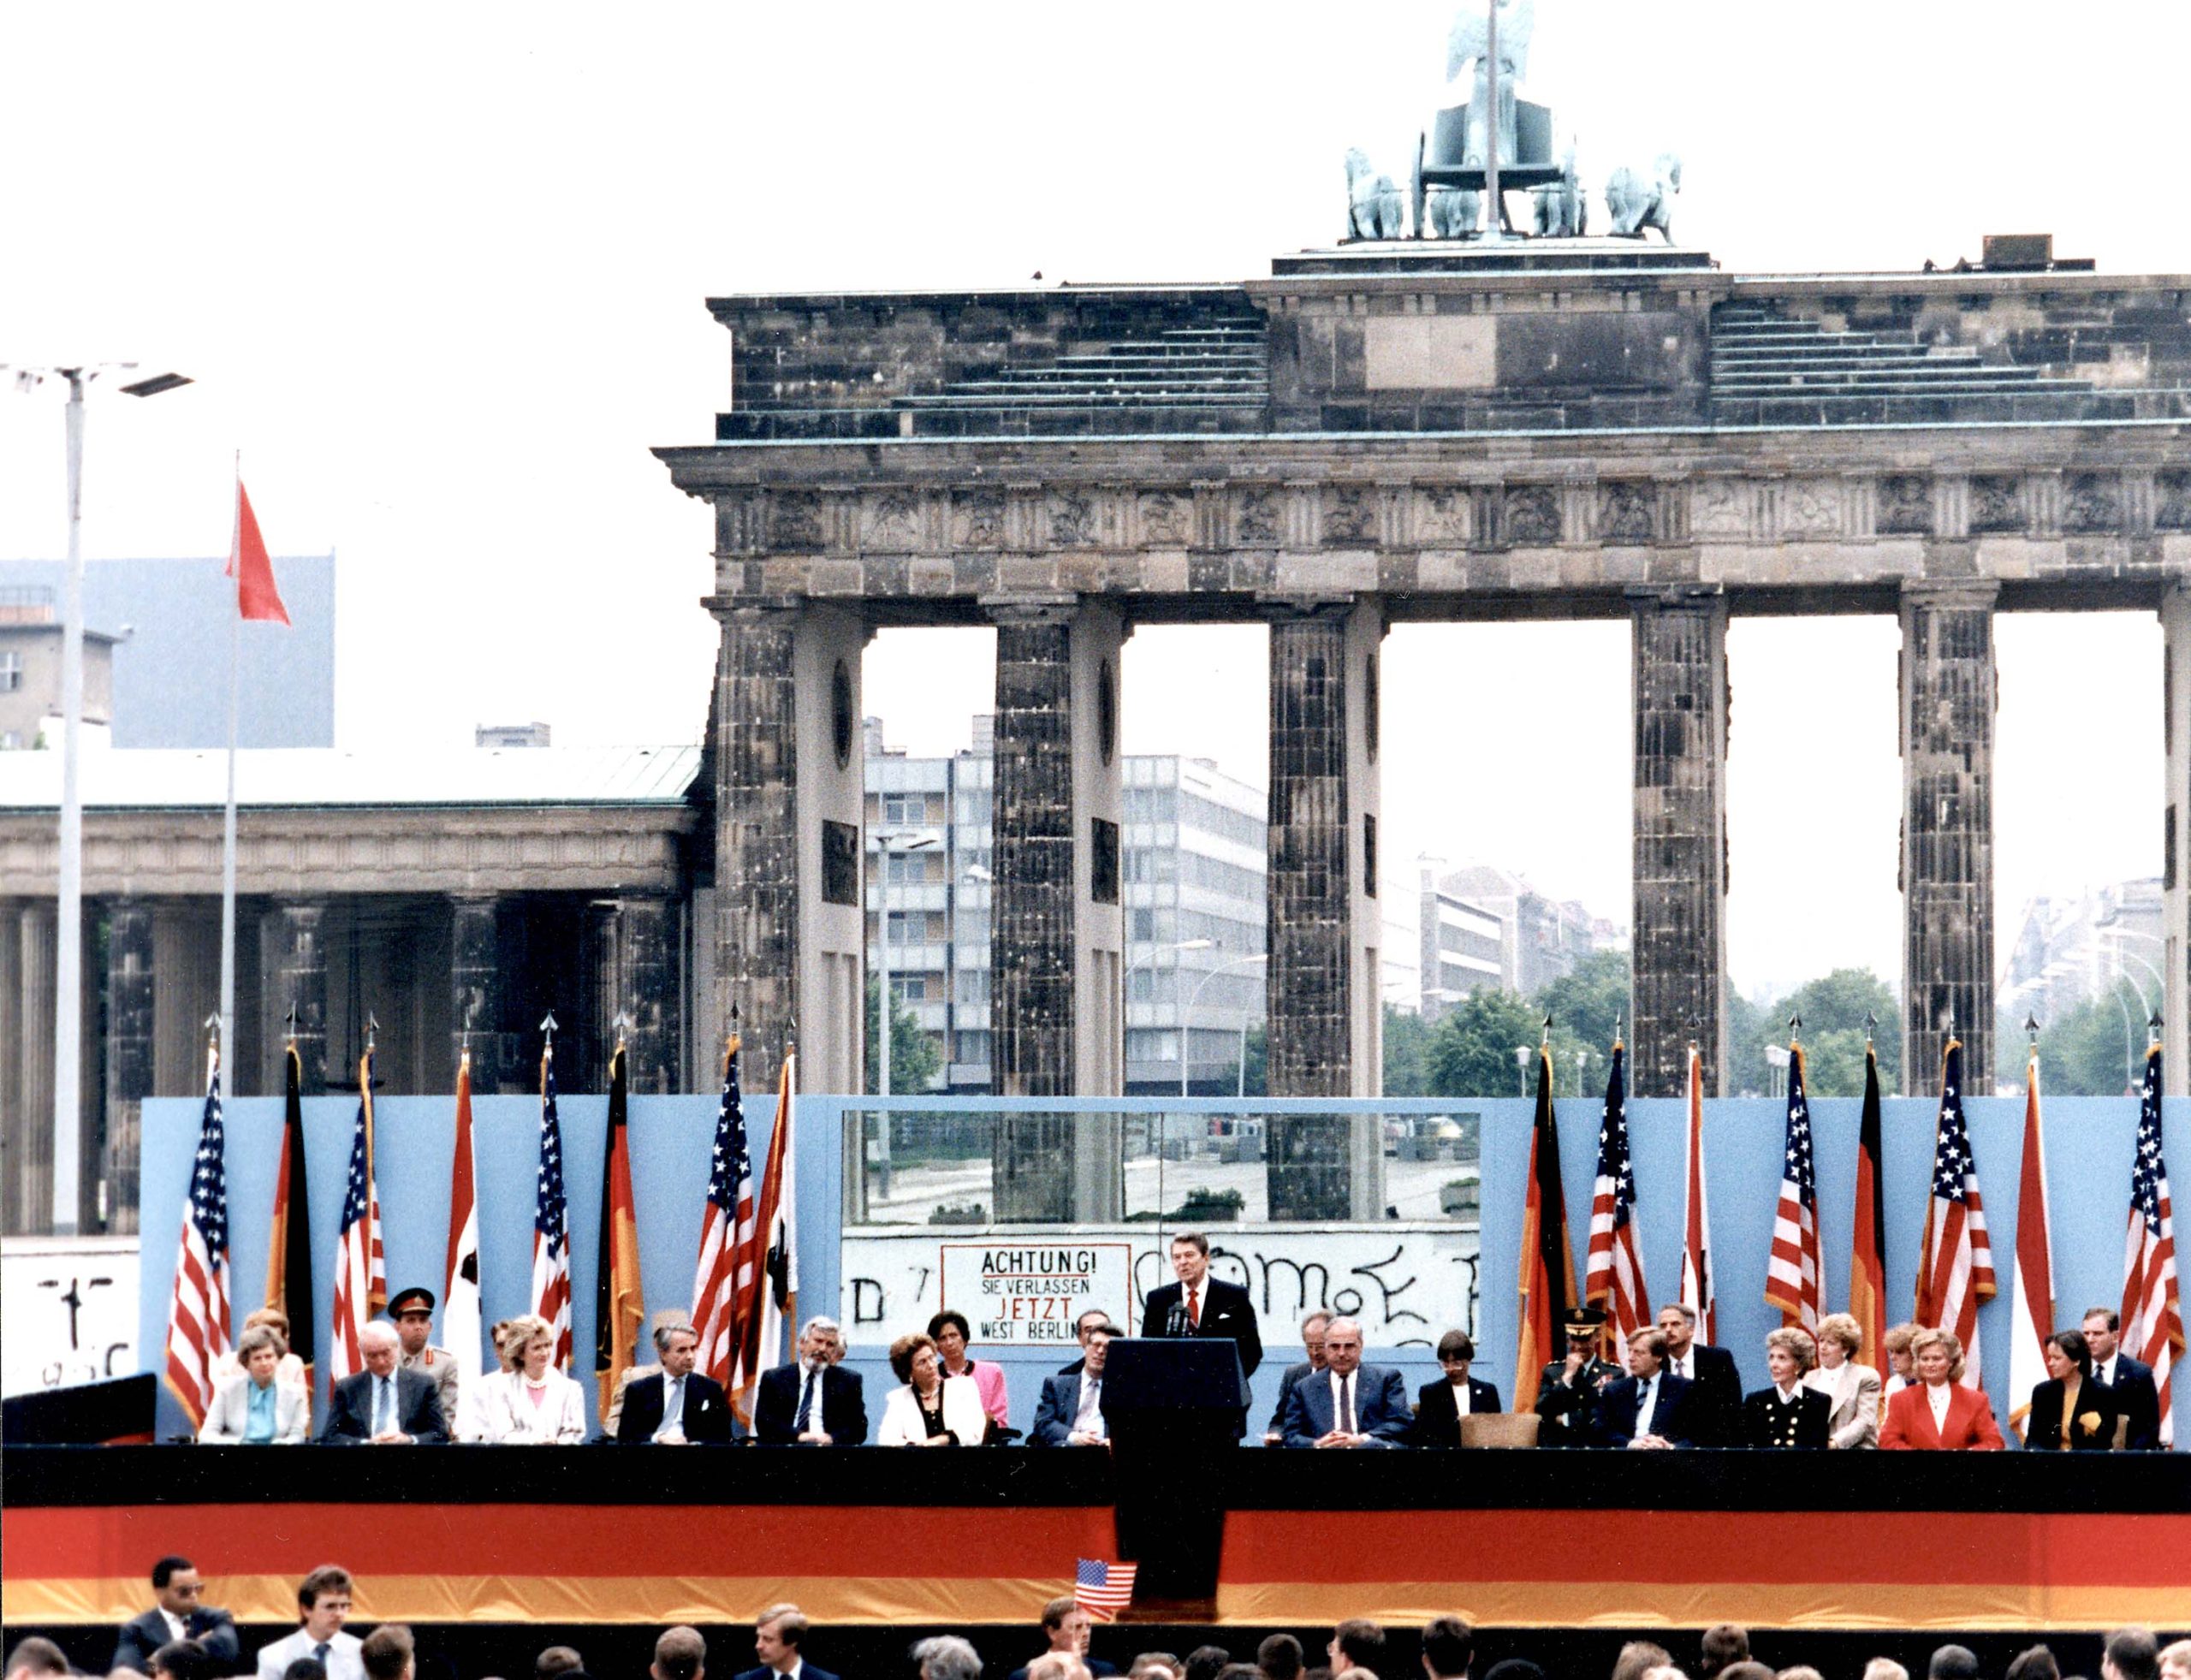 Reagan speech at the Berlin Wall